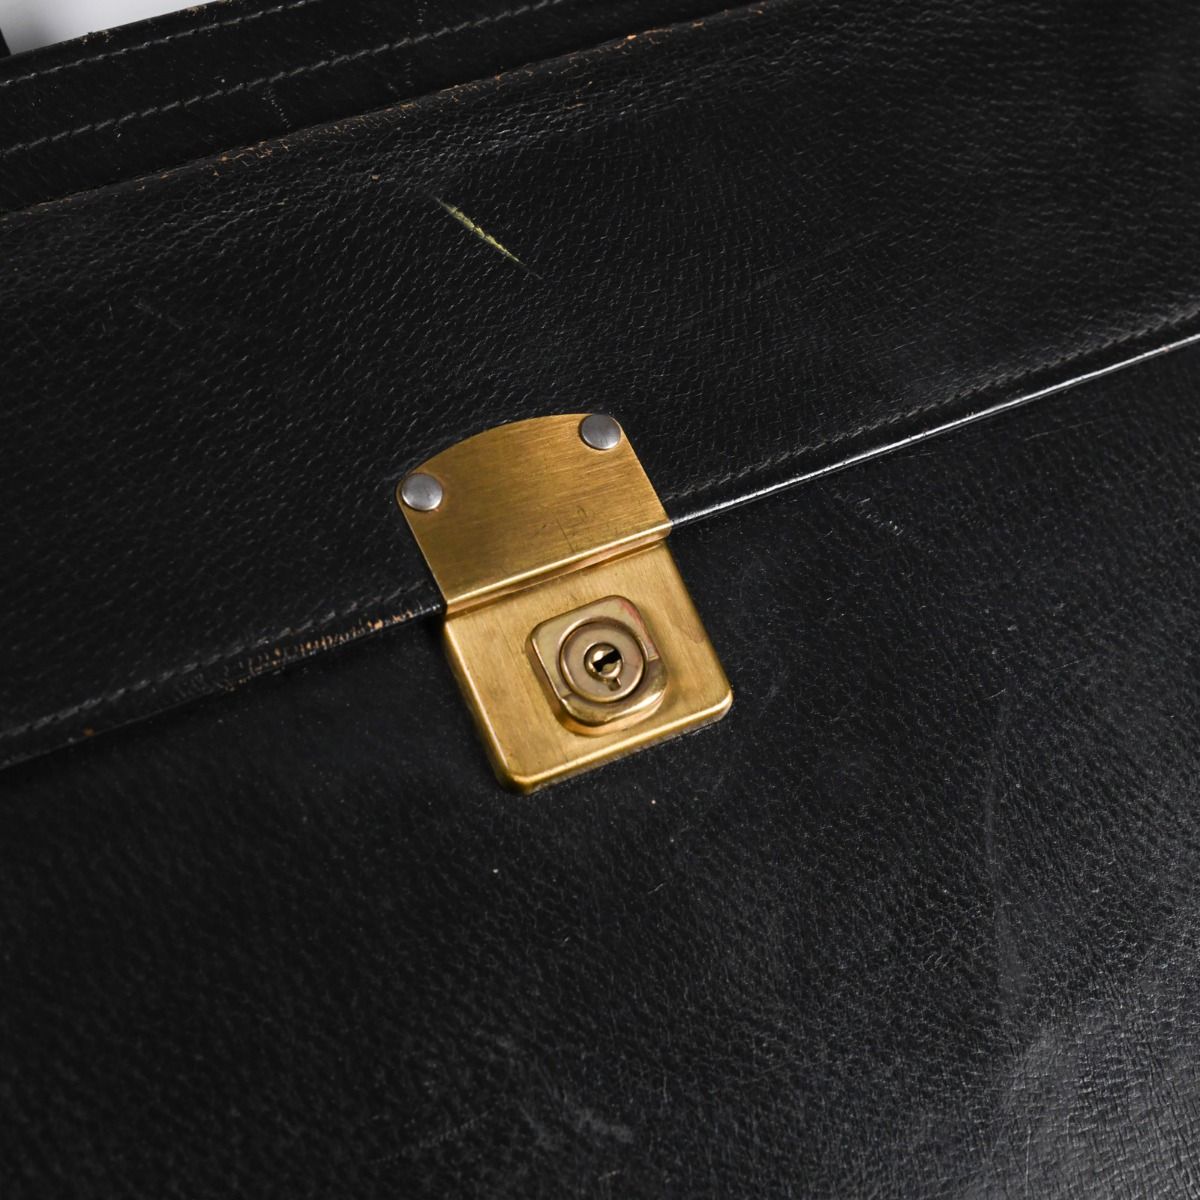 Vintage Black Leather Messenger Bag w/ Sliding Handles